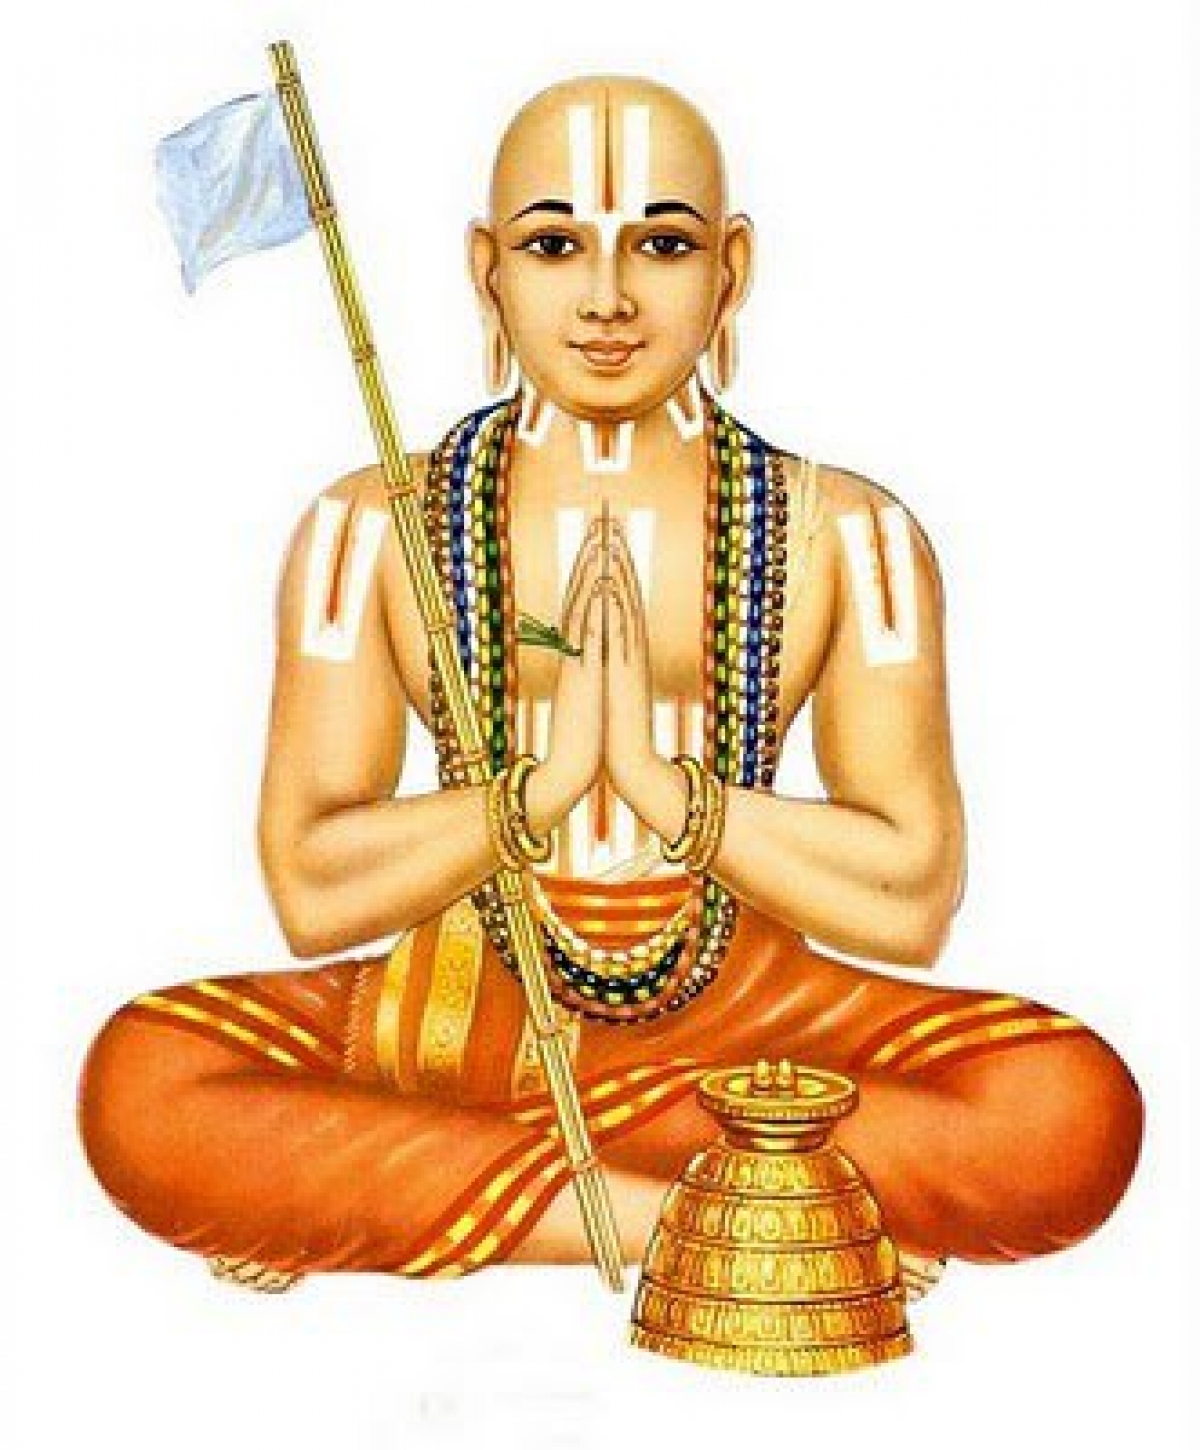 28 апреля 2020 года: Рамануджа-джаянти (День рождения Рамануджа-ачарьи)